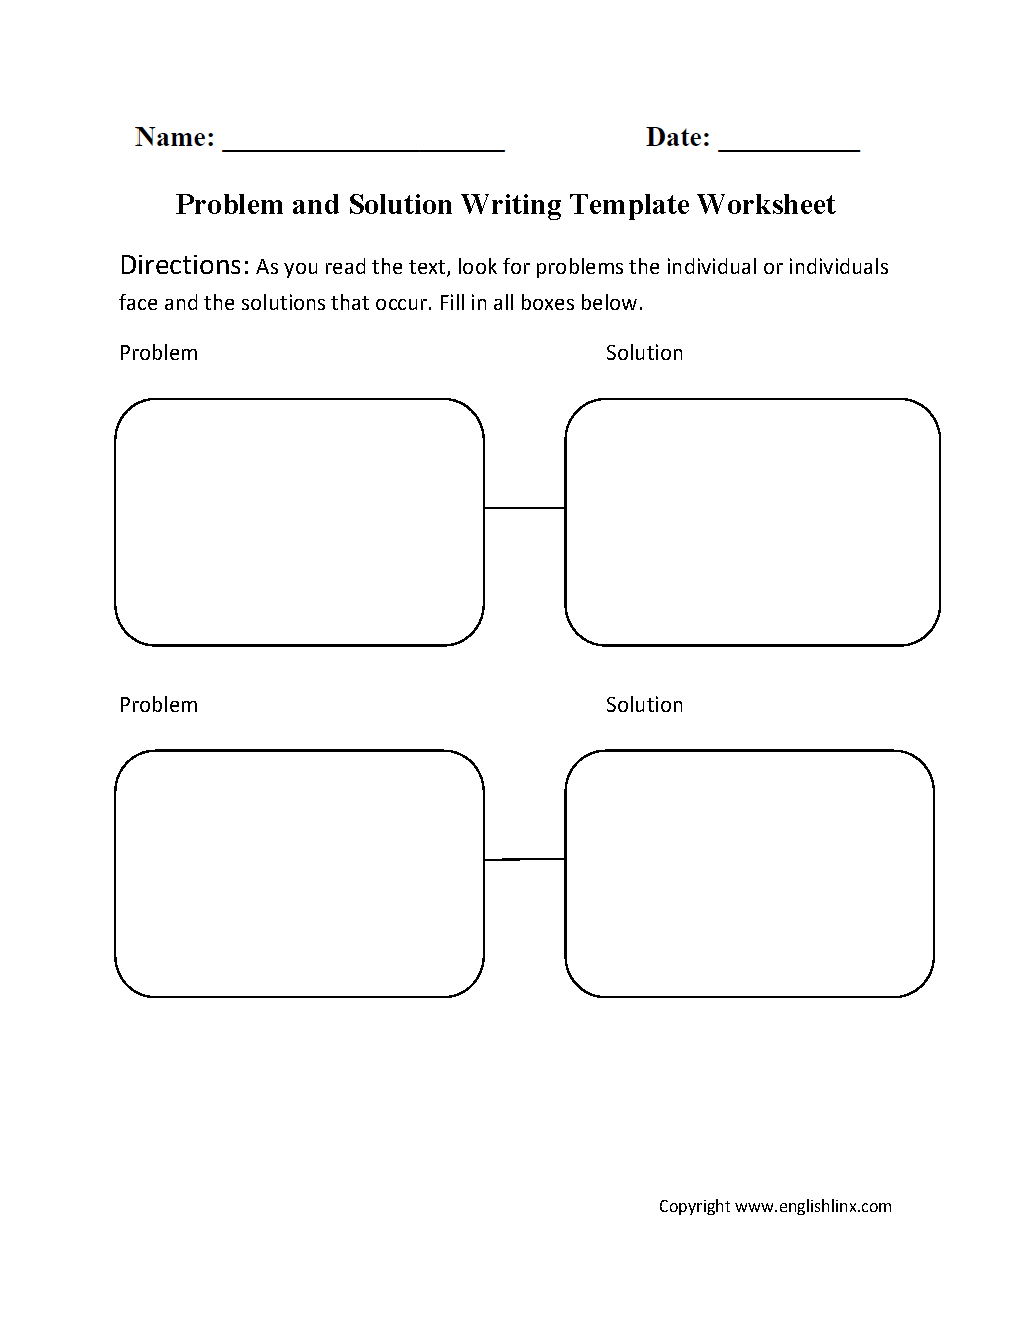 Problem and solution essay topics